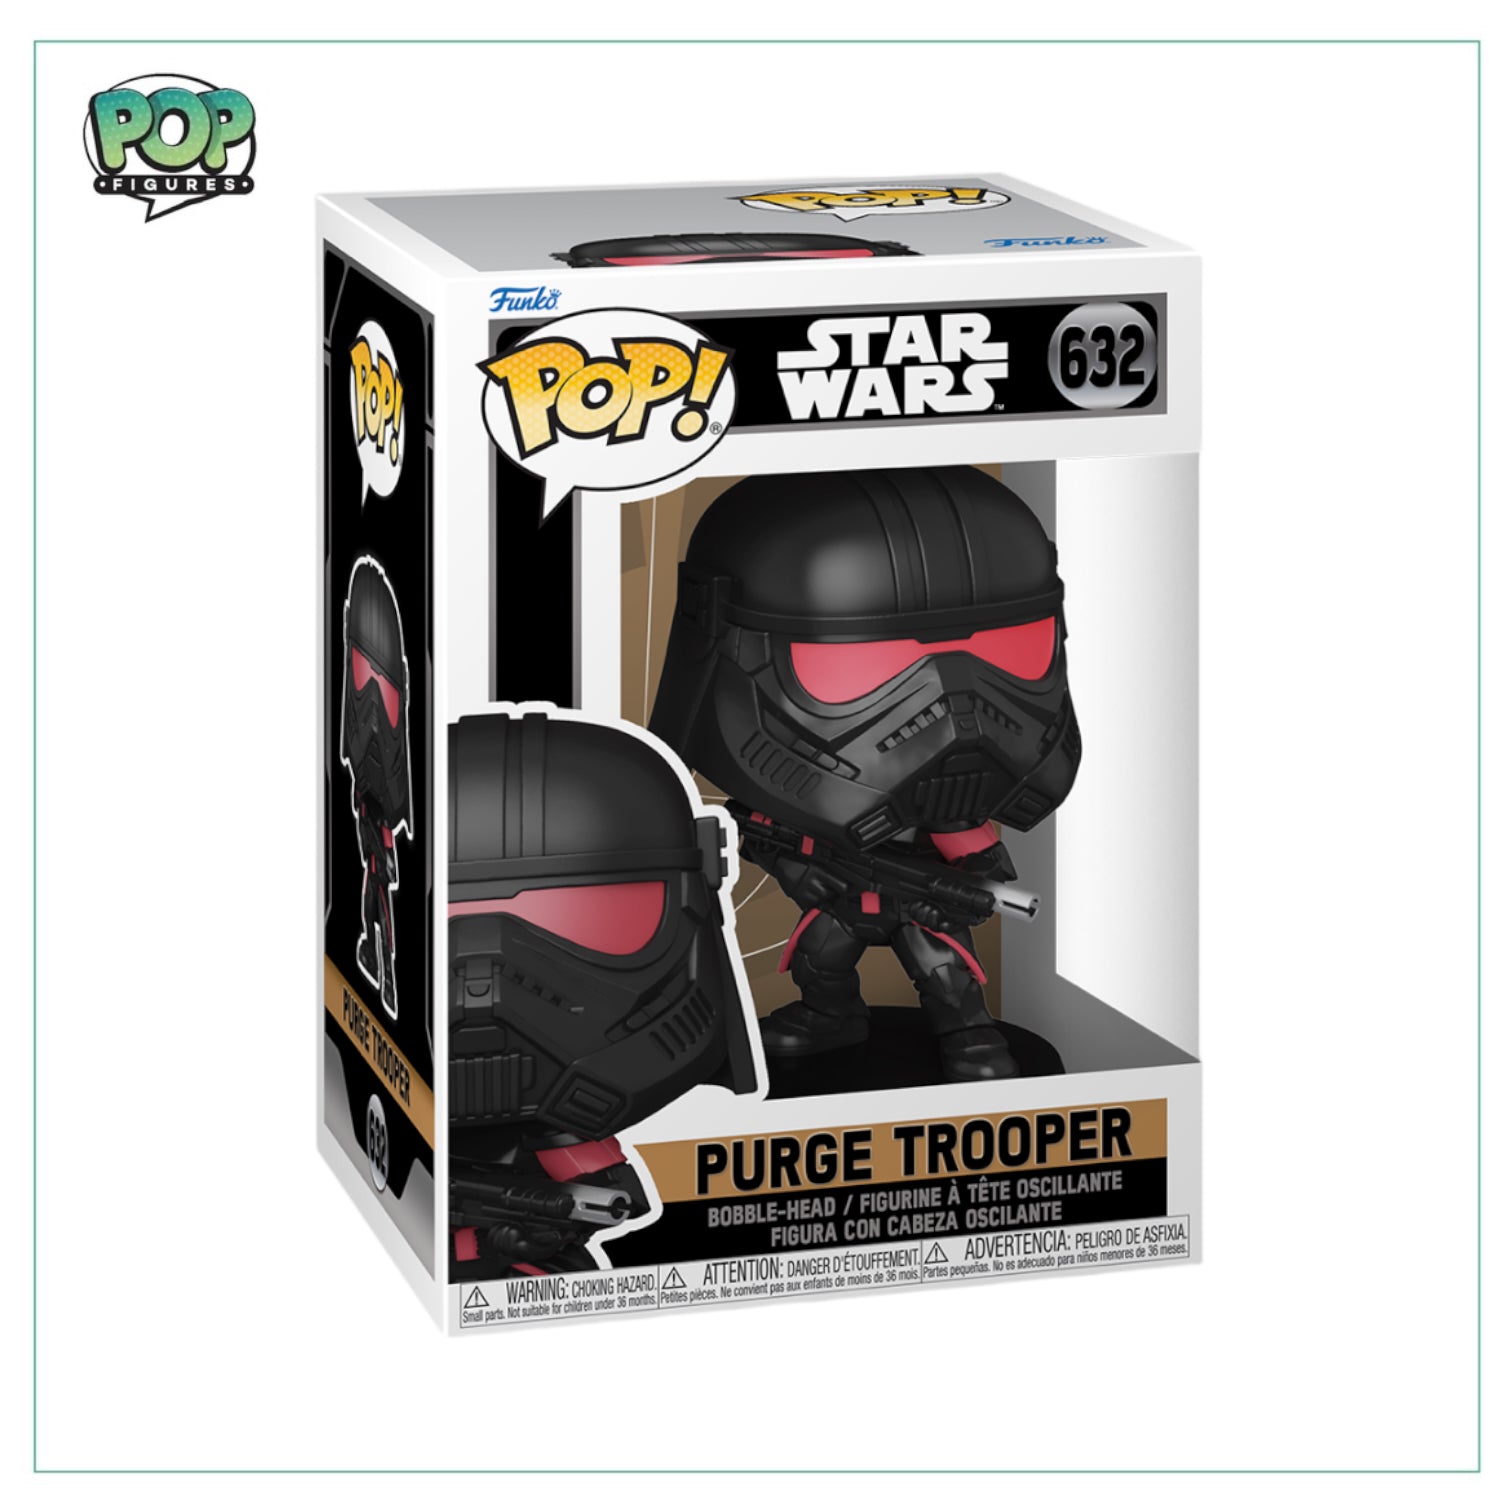 Purge Trooper #632 Funko Pop! Star Wars Obi-Wan Kenobi